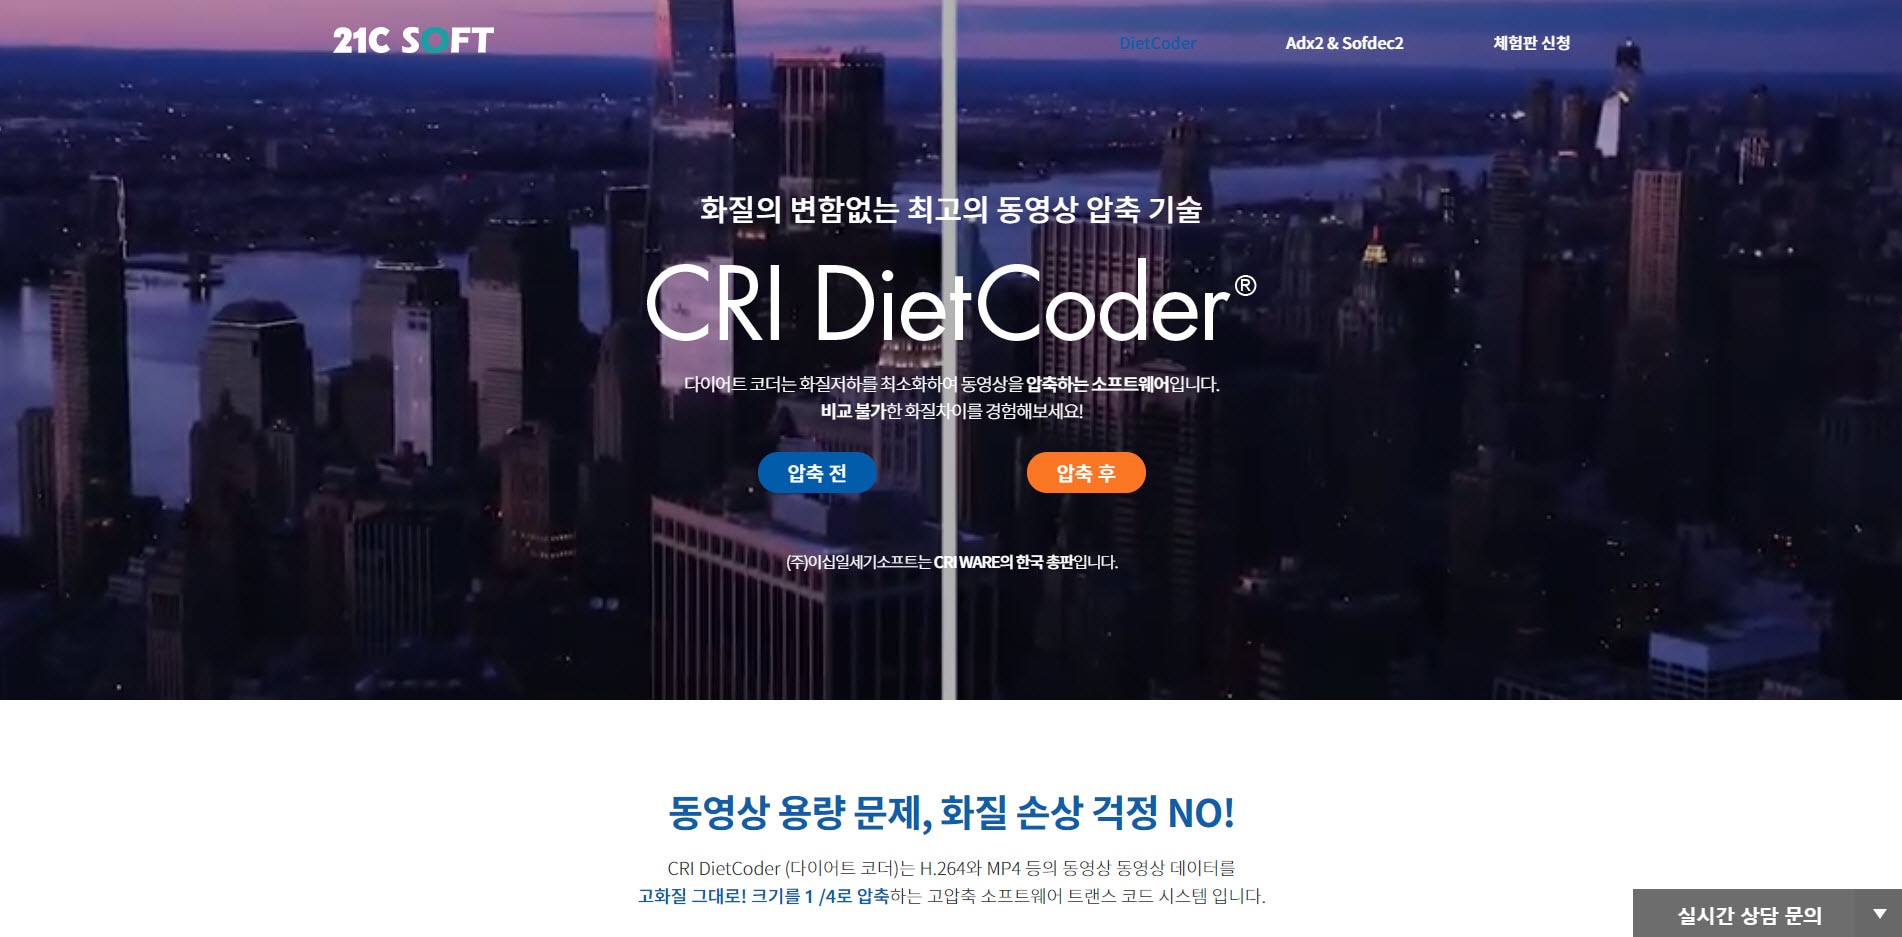 CRI DietCoder